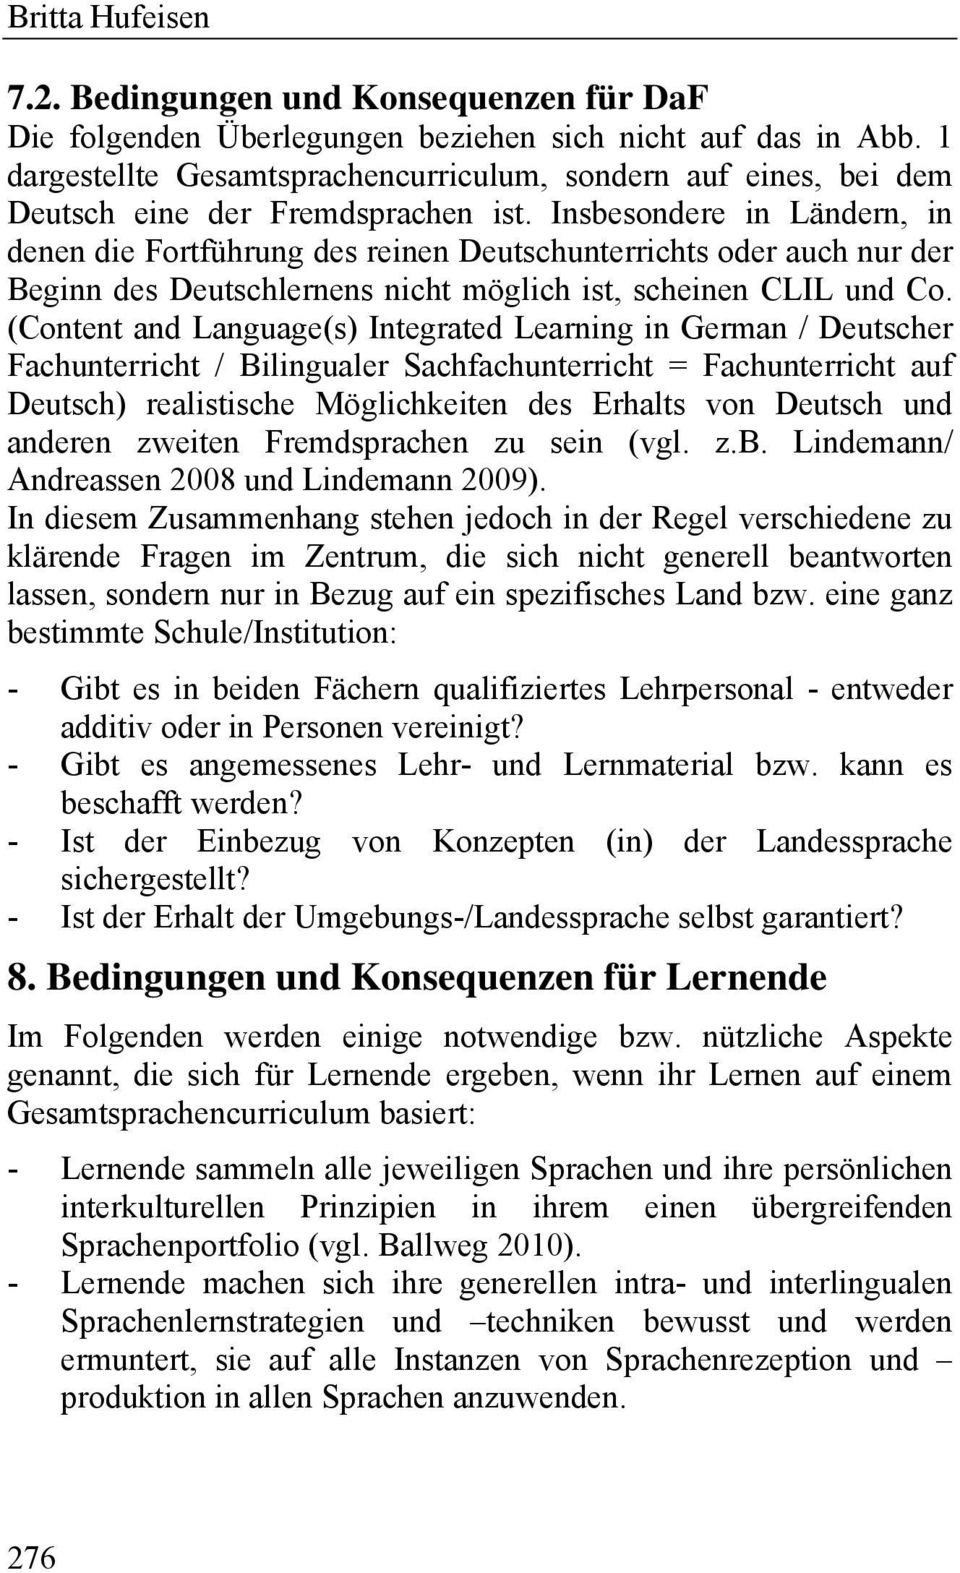 Insbesondere in Ländern, in denen die Fortführung des reinen Deutschunterrichts oder auch nur der Beginn des Deutschlernens nicht möglich ist, scheinen CLIL und Co.